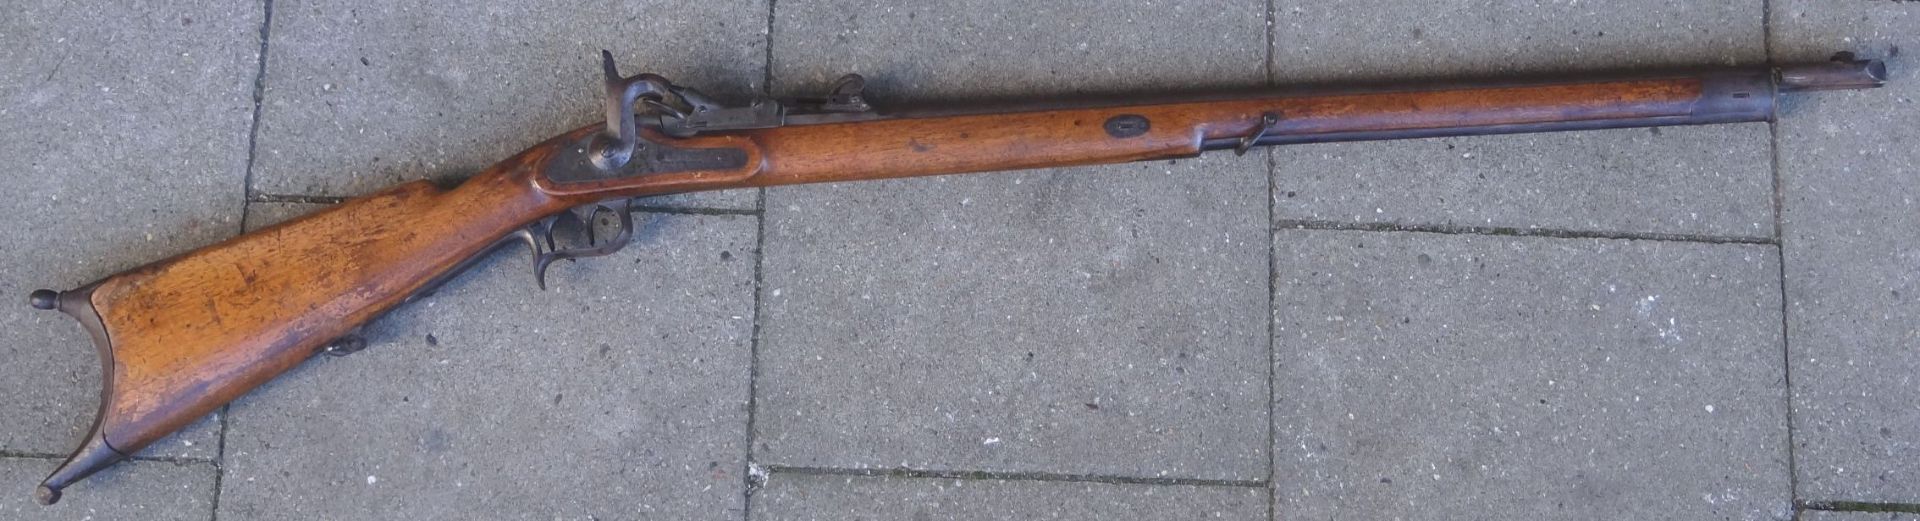 Infantrie-Gewehr, Vorderlader um 1860 "Wüttembergische Waffen-Fabrik" Stempel, div. Nummern, L-126 - Bild 2 aus 9